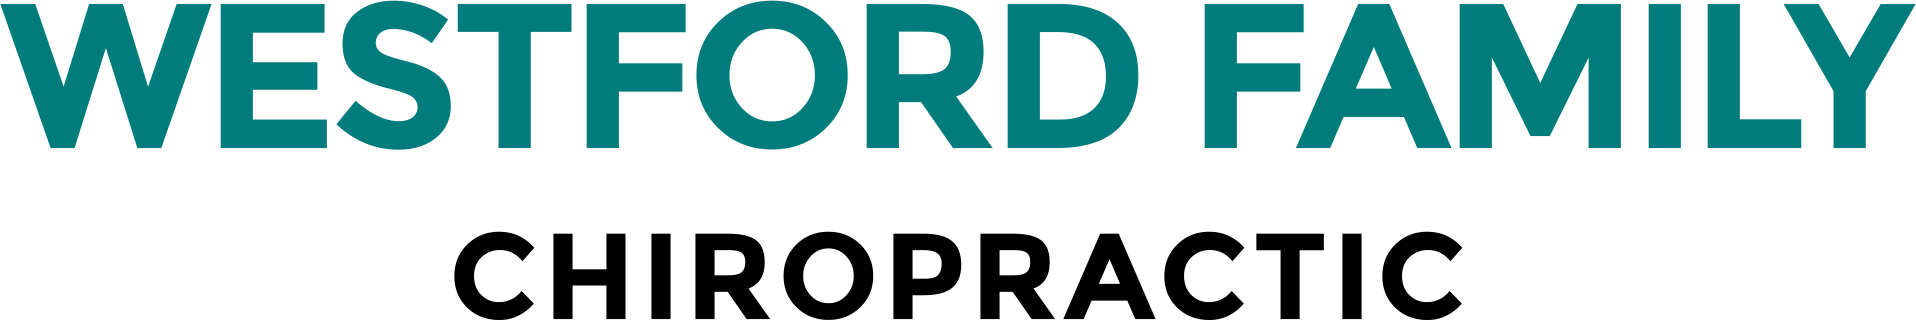 Westford Family Chiropractic Logo